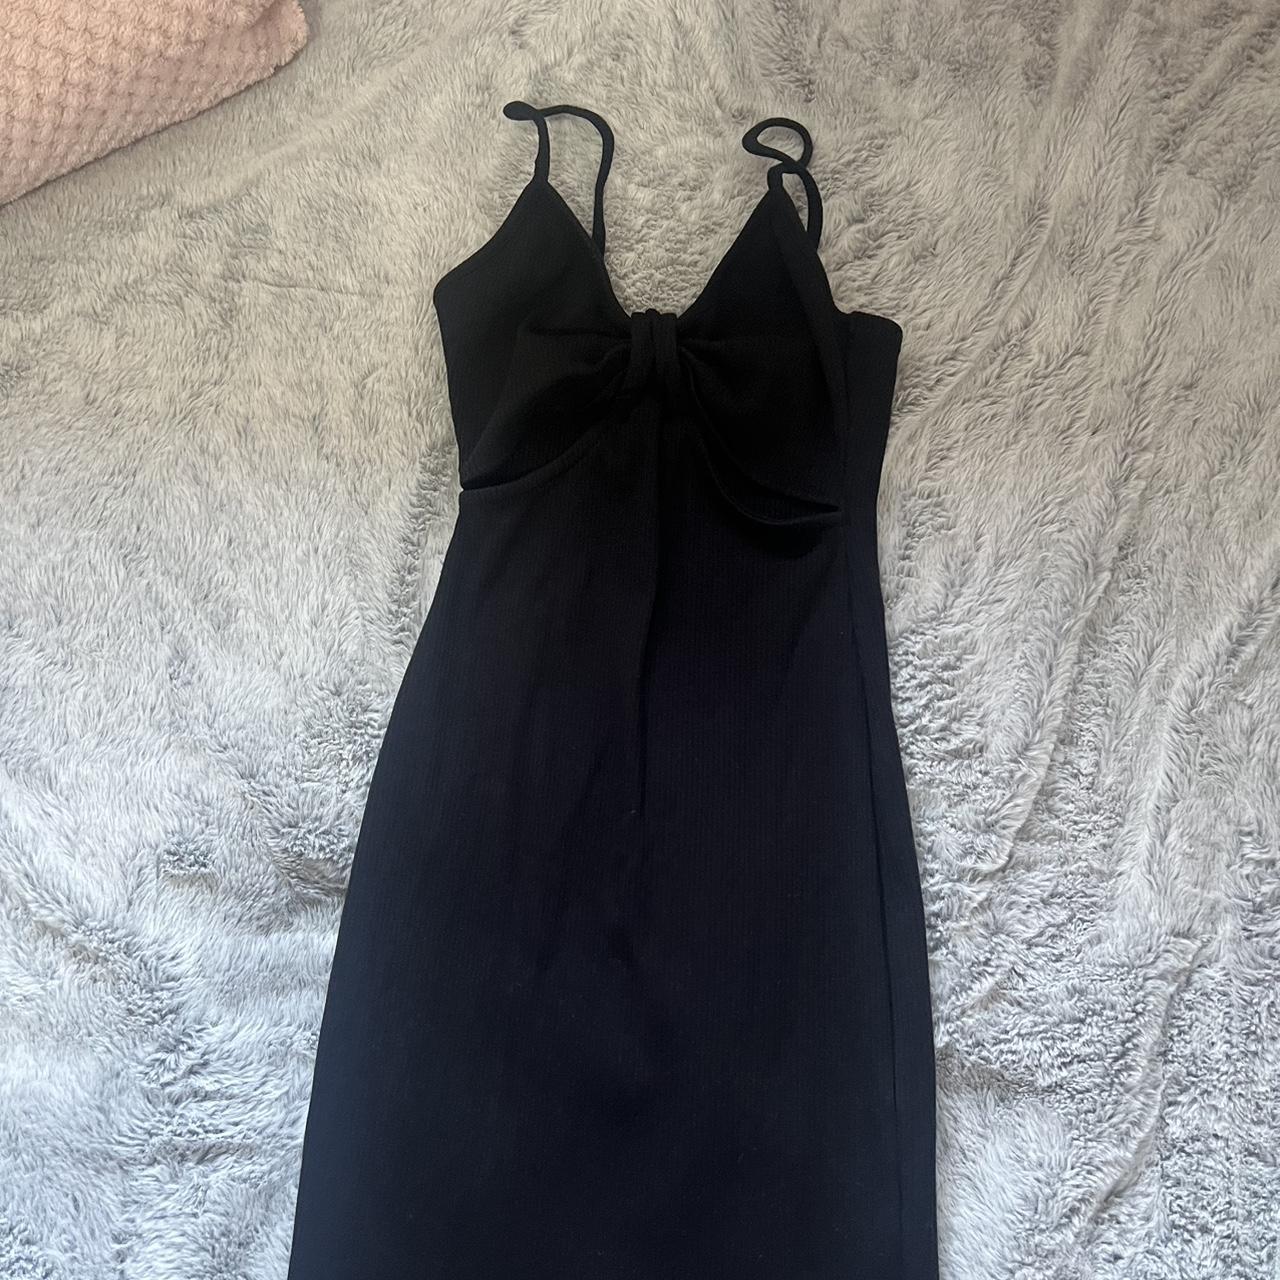 Primark black cut out dress worn once size 6... - Depop